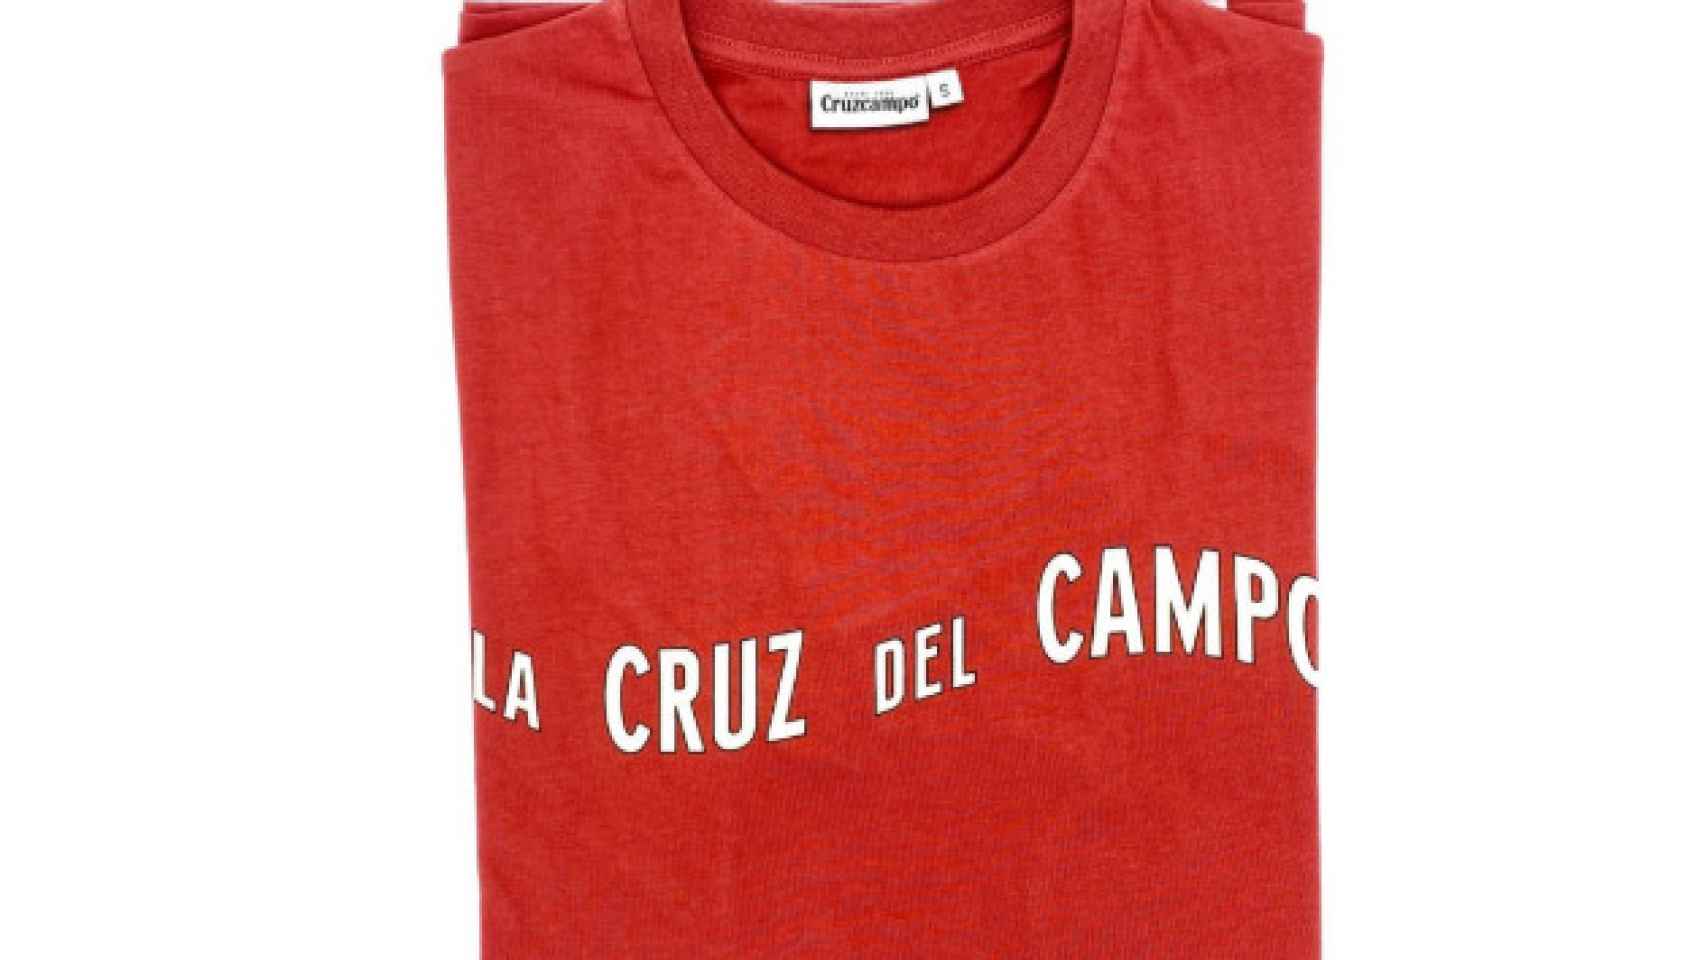 Camiseta Cruz del Campo de la nueva línea de ropa de Cruzcampo